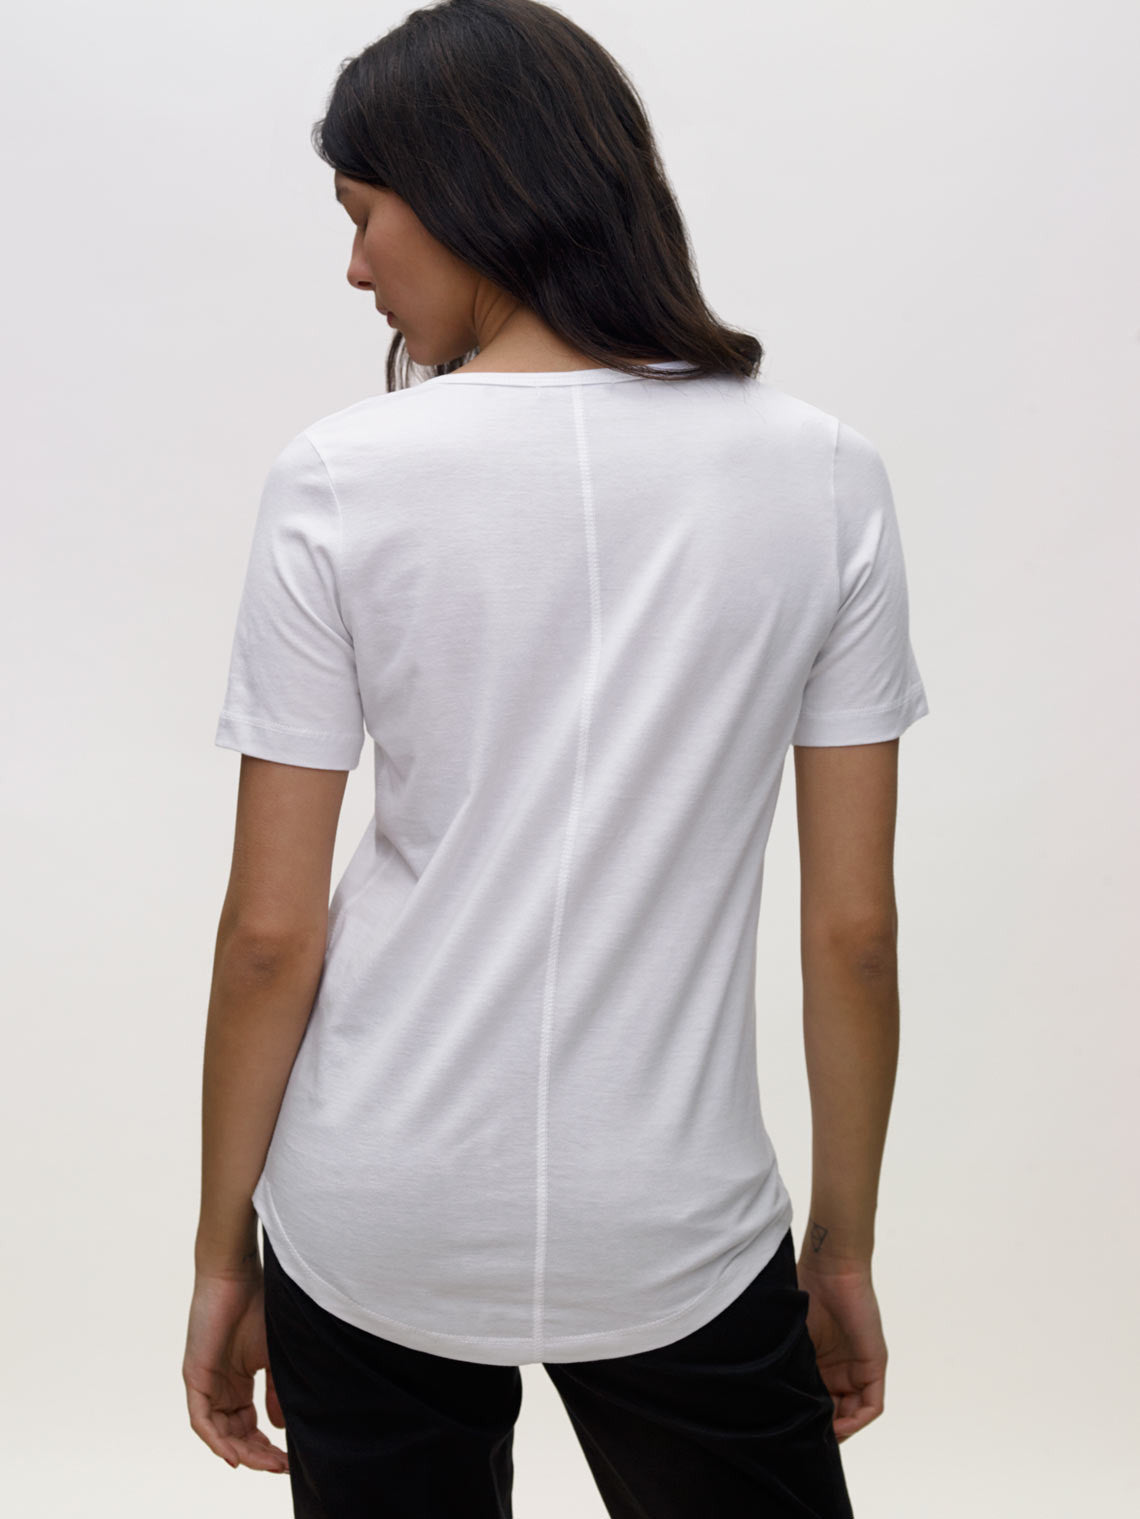 Model wearing white, v neck, KOTN t-shirt. View of Models back.